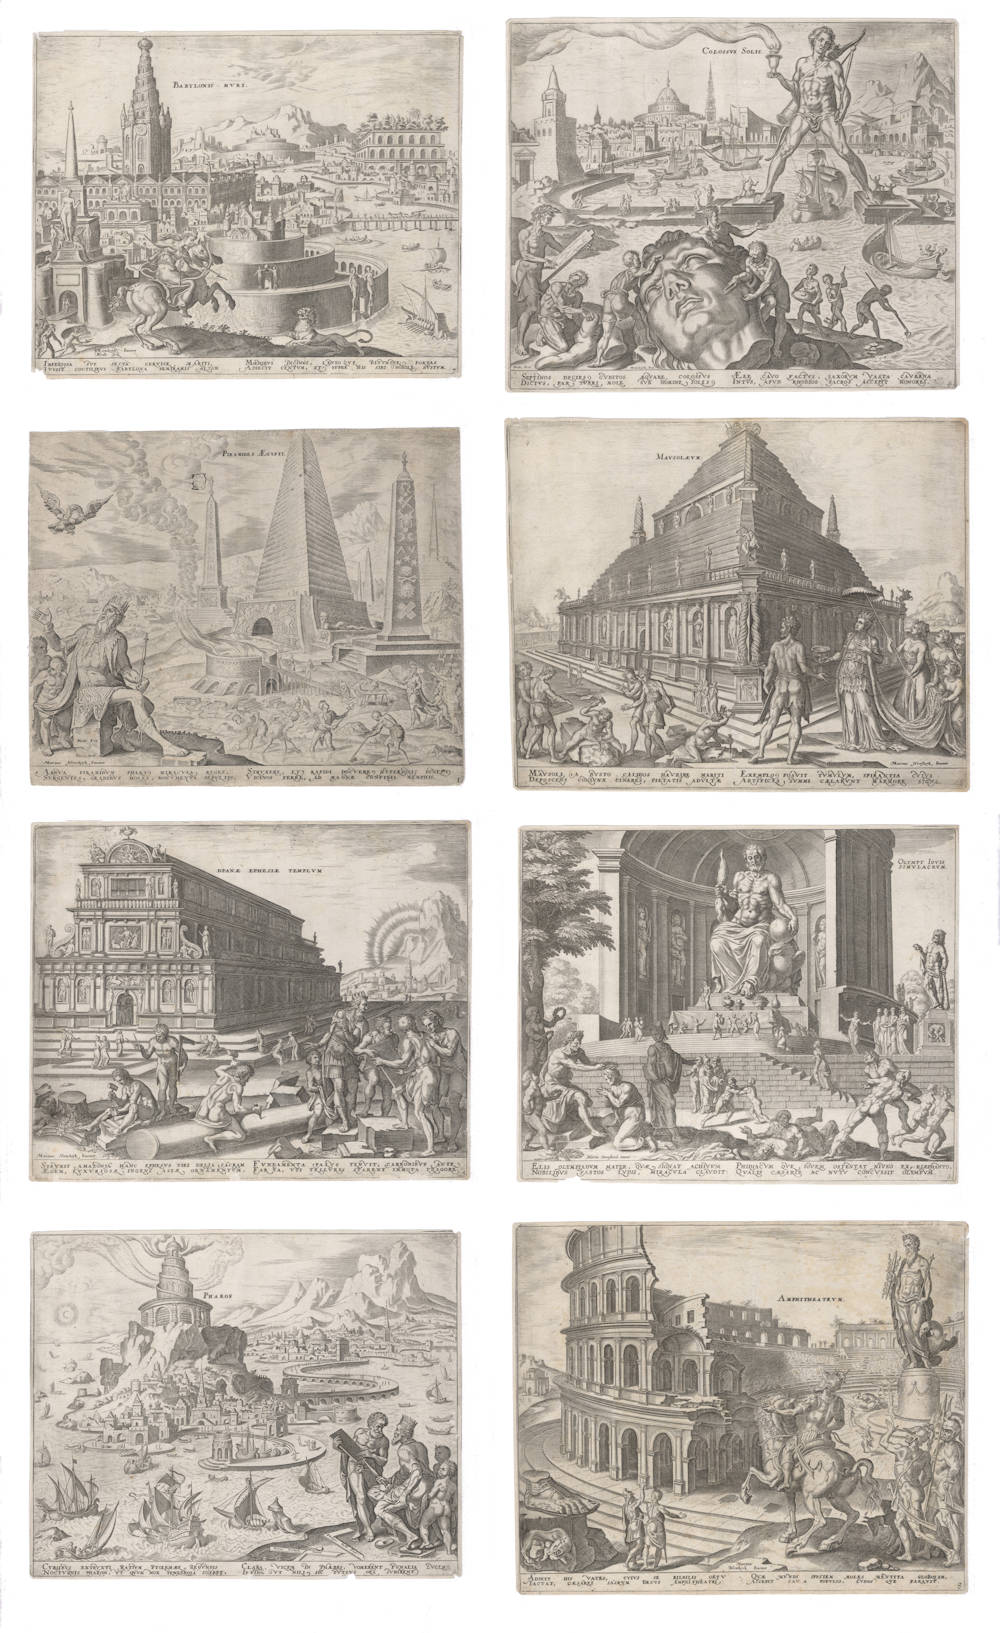 Allegories of the seven wonders of the world by Maarten van Heemskerck